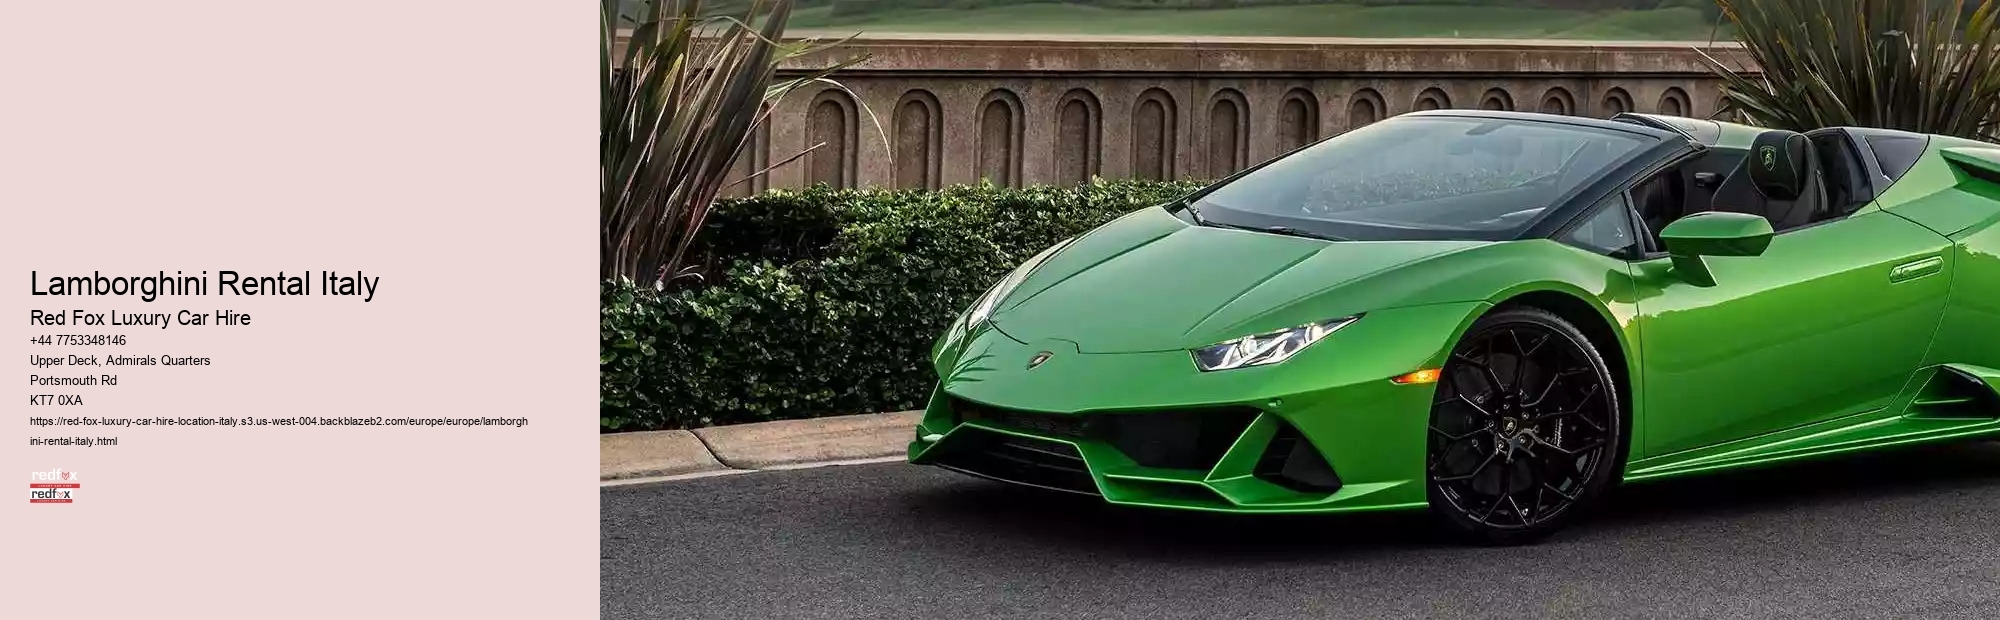 Lamborghini Rental Italy